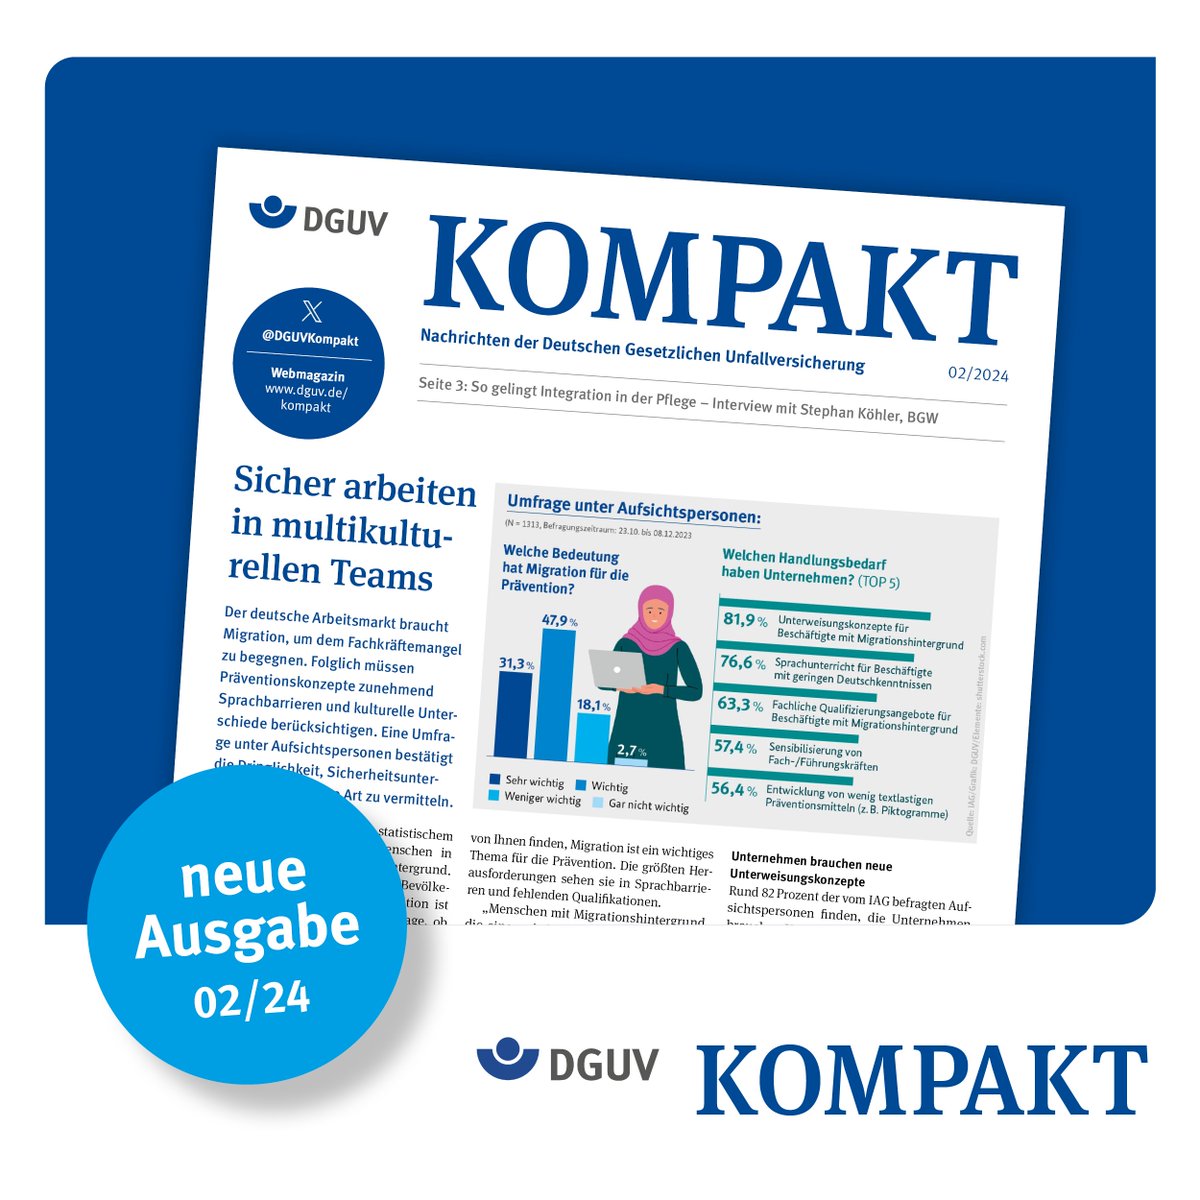 Die neueste Ausgabe der Kompakt ist da und bietet auch dieses Mal wieder die wichtigsten Nachrichten aus der DGUV. Dieses Mal geht es u.a. um sicheres Arbeiten in multikulturellen Teams und um mehr Aufmerksamkeit für weniger Wegeunfälle: dguv.de/kompakt/index.…